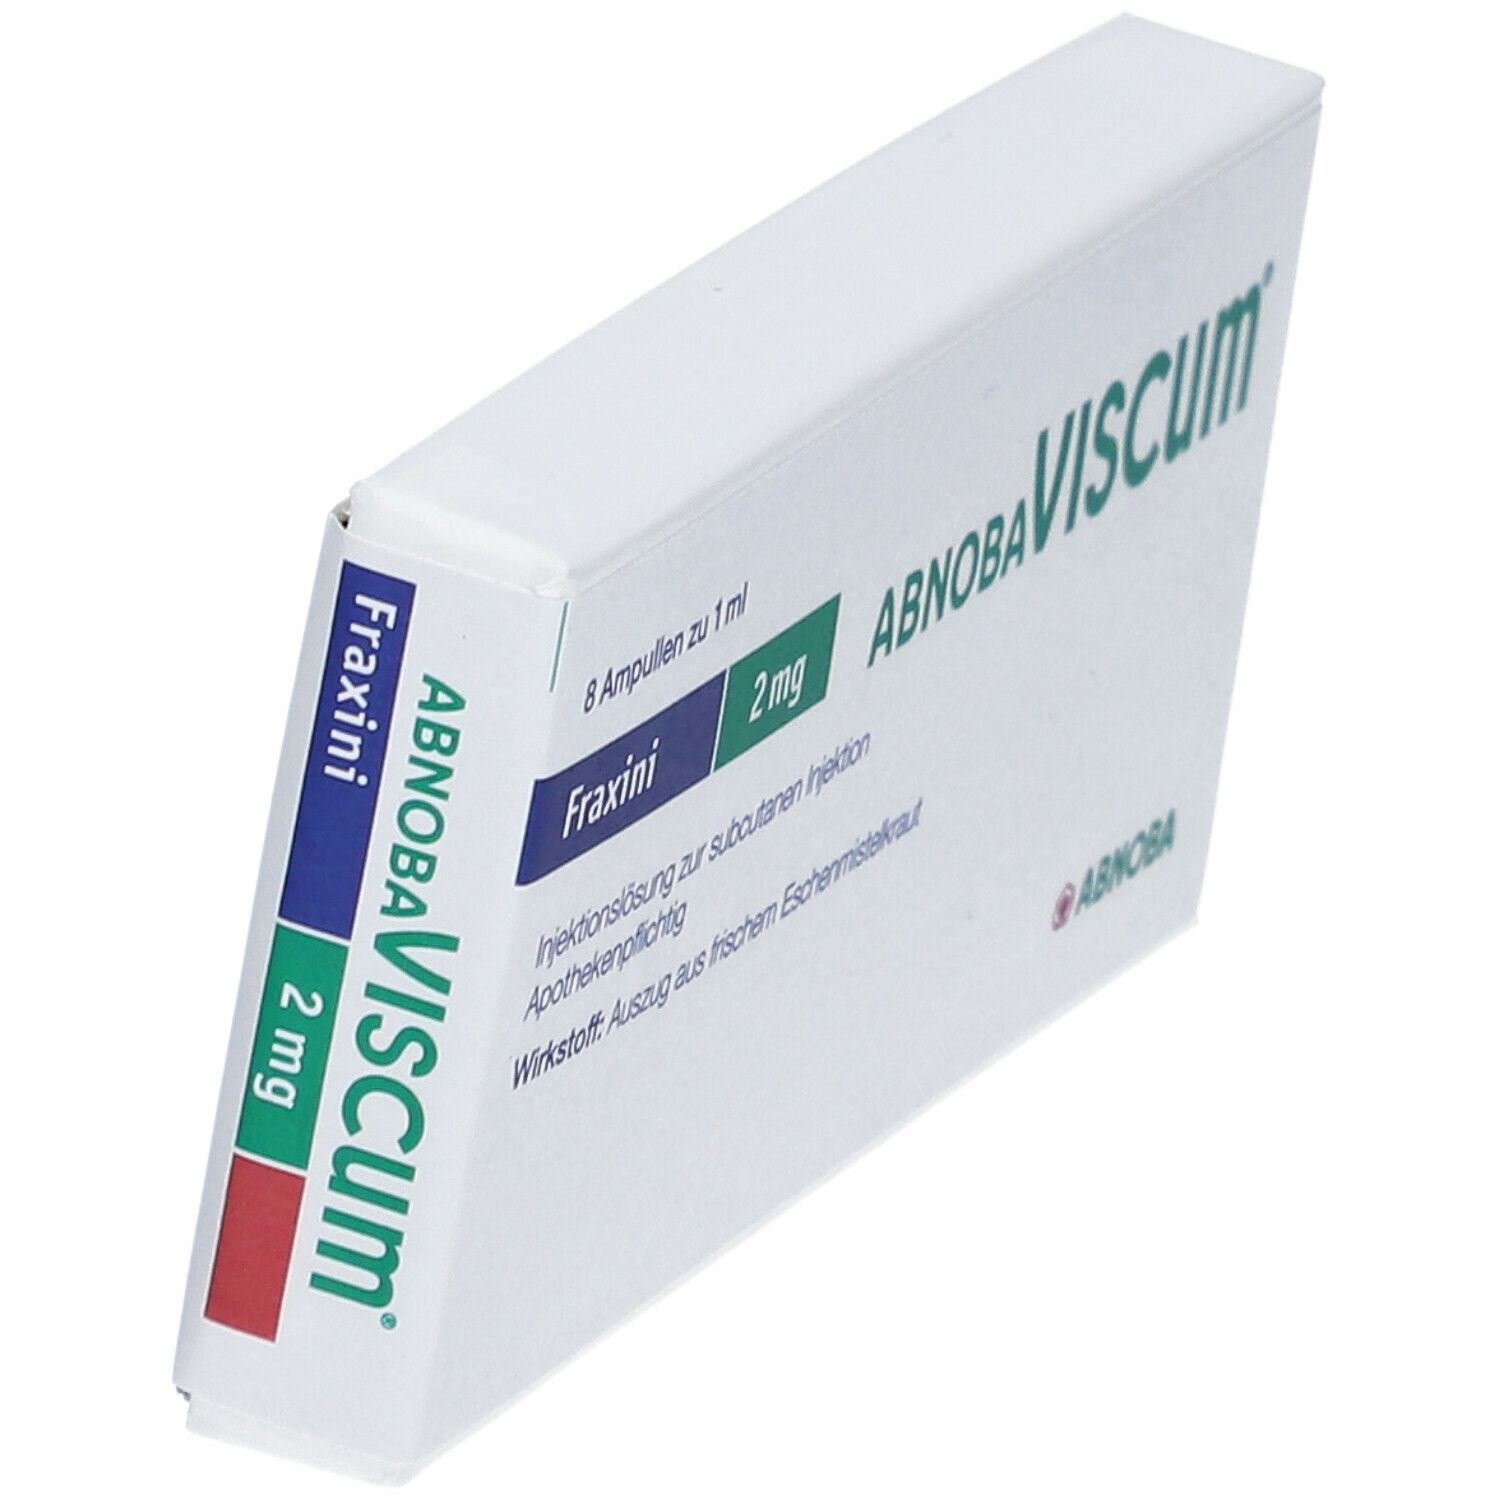 abnobaVISCUM® Fraxini 2 mg Ampullen